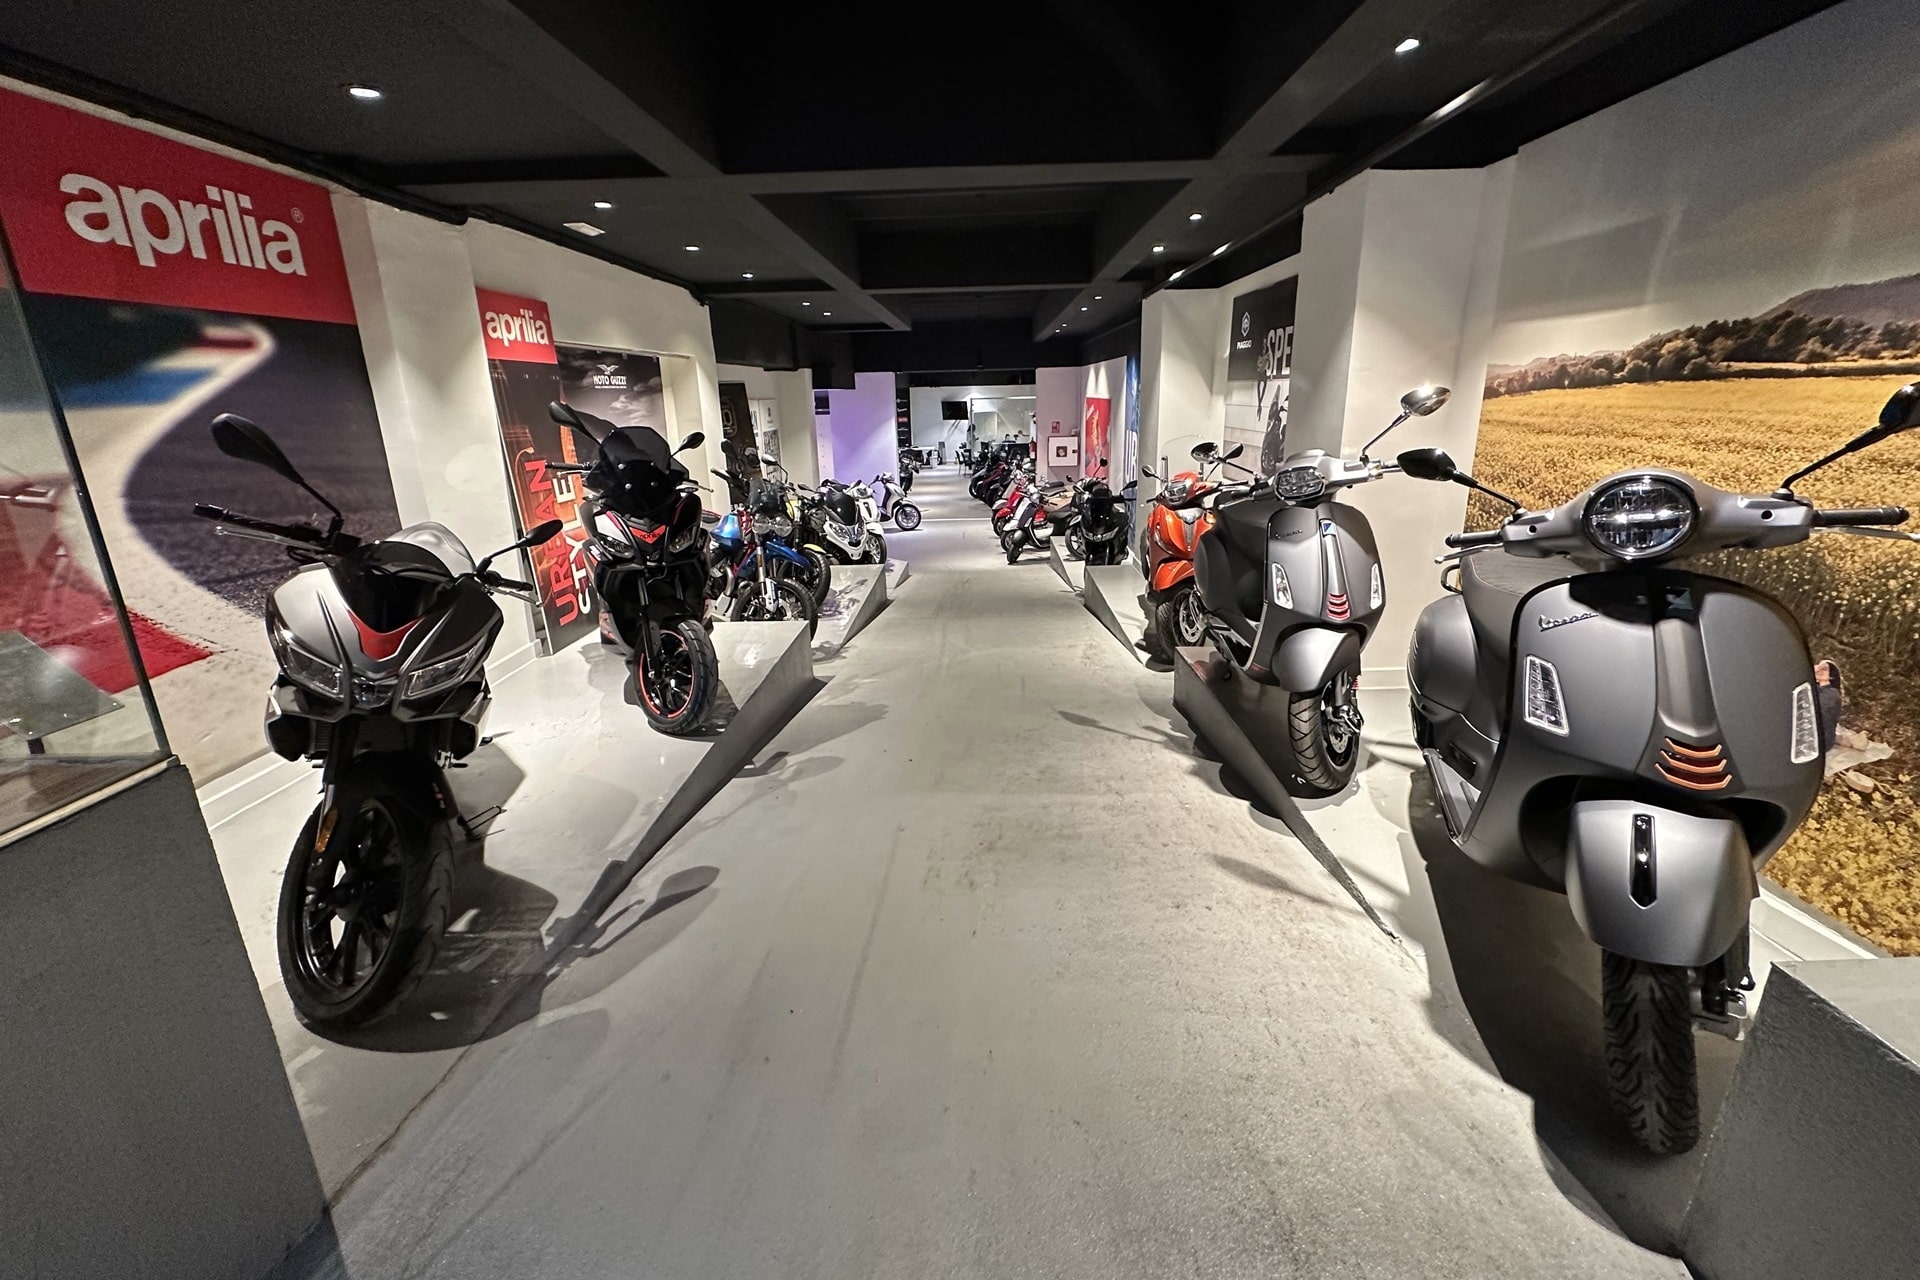 Motos Balart, de la mano del Grupo Piaggio, expande su red comercial en Barcelona